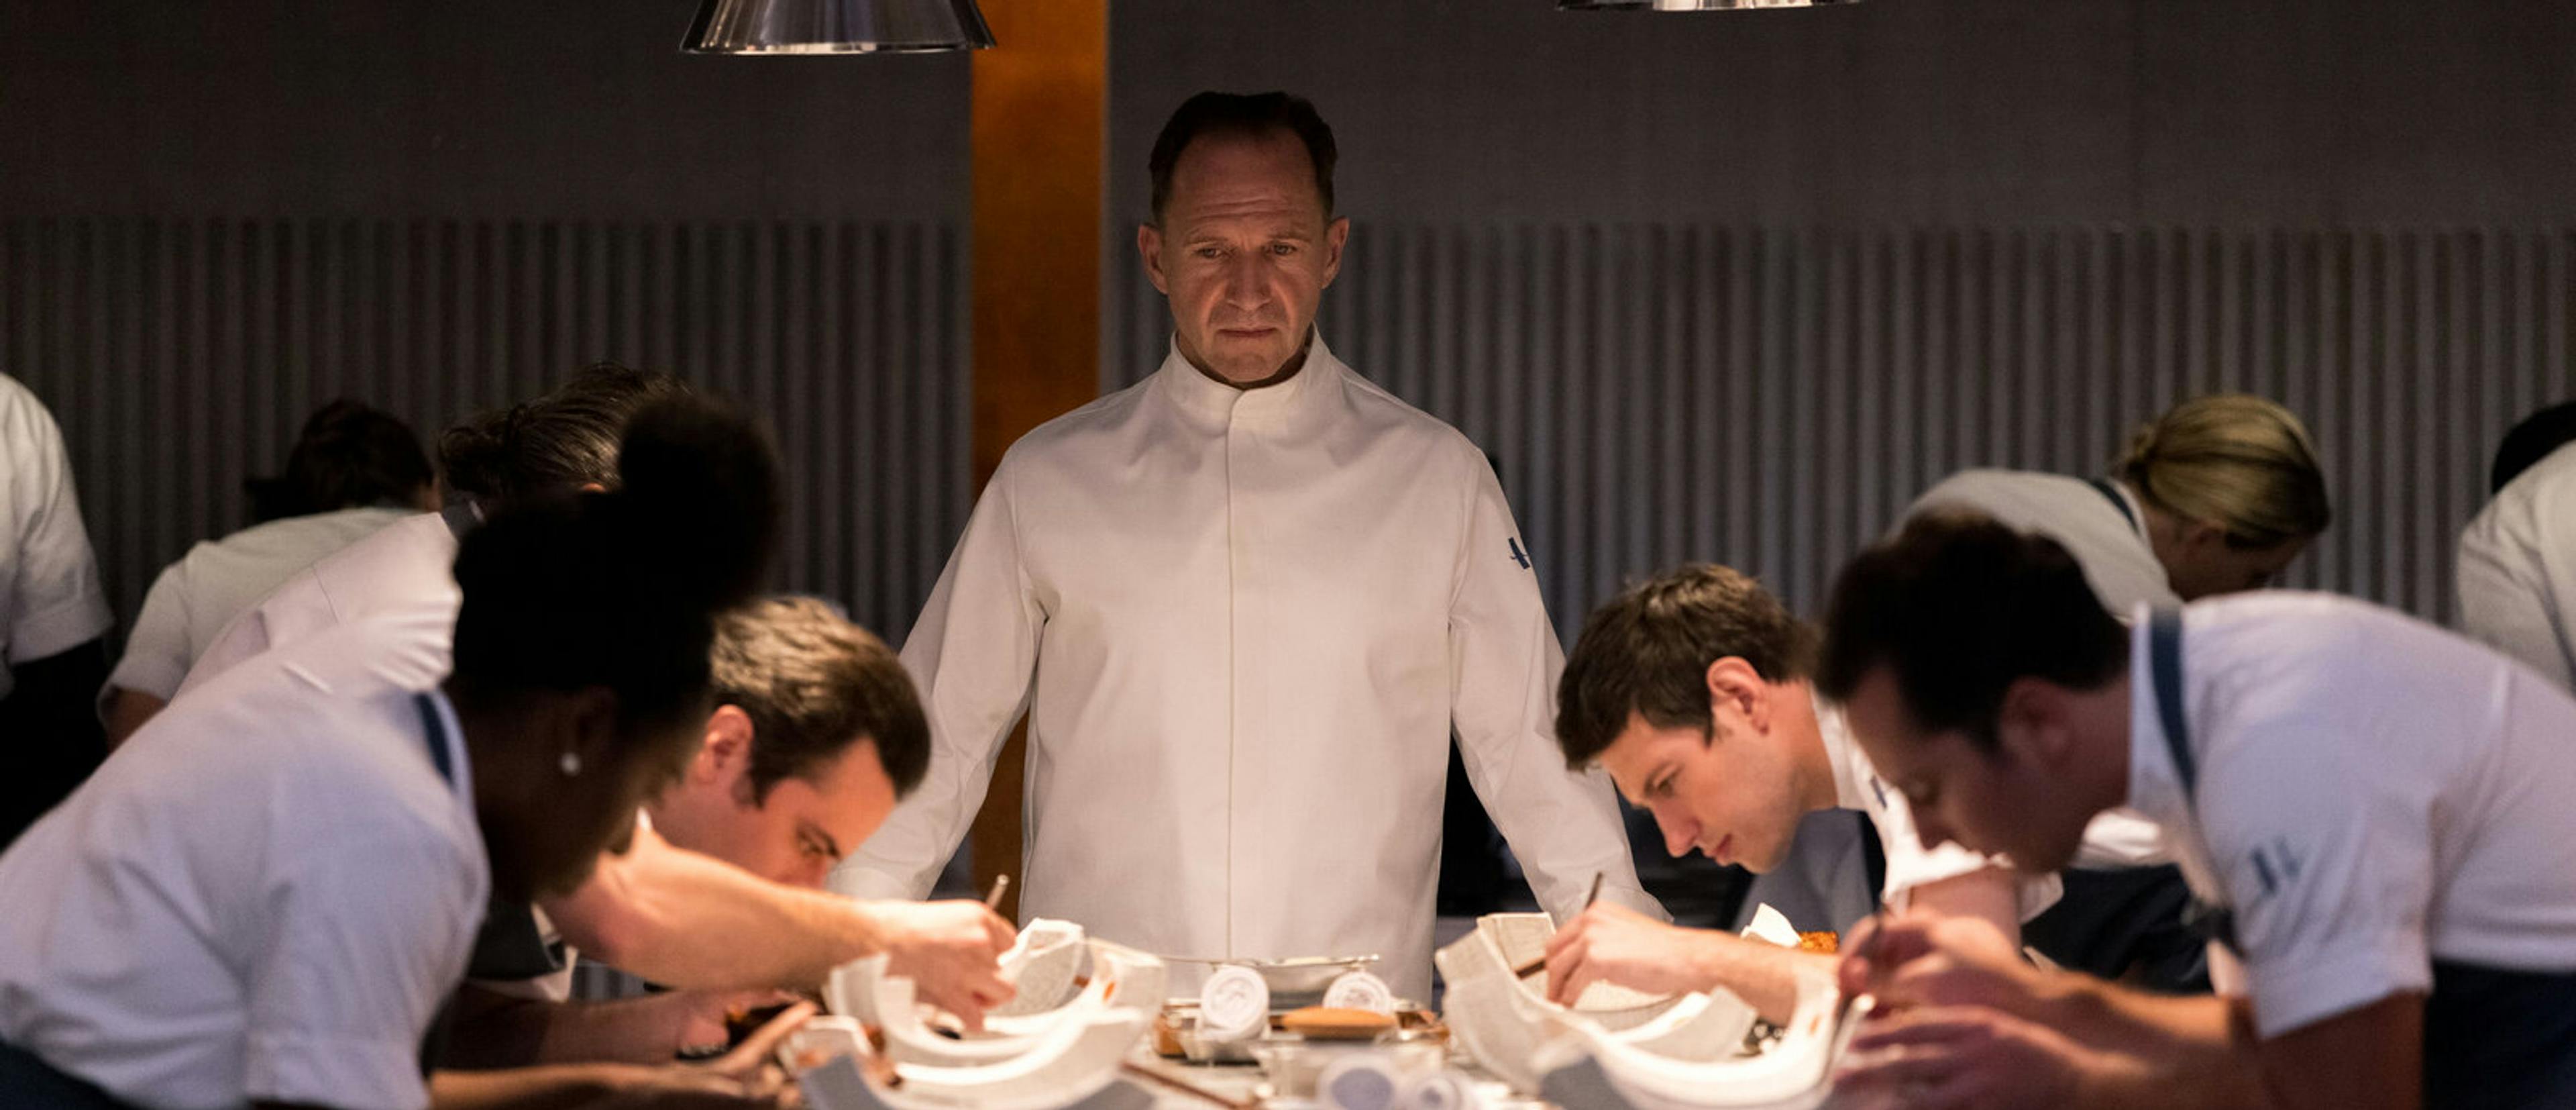 Fotograma promocional de la película 'El menú', con el actor Ralph Fiennes en primer término